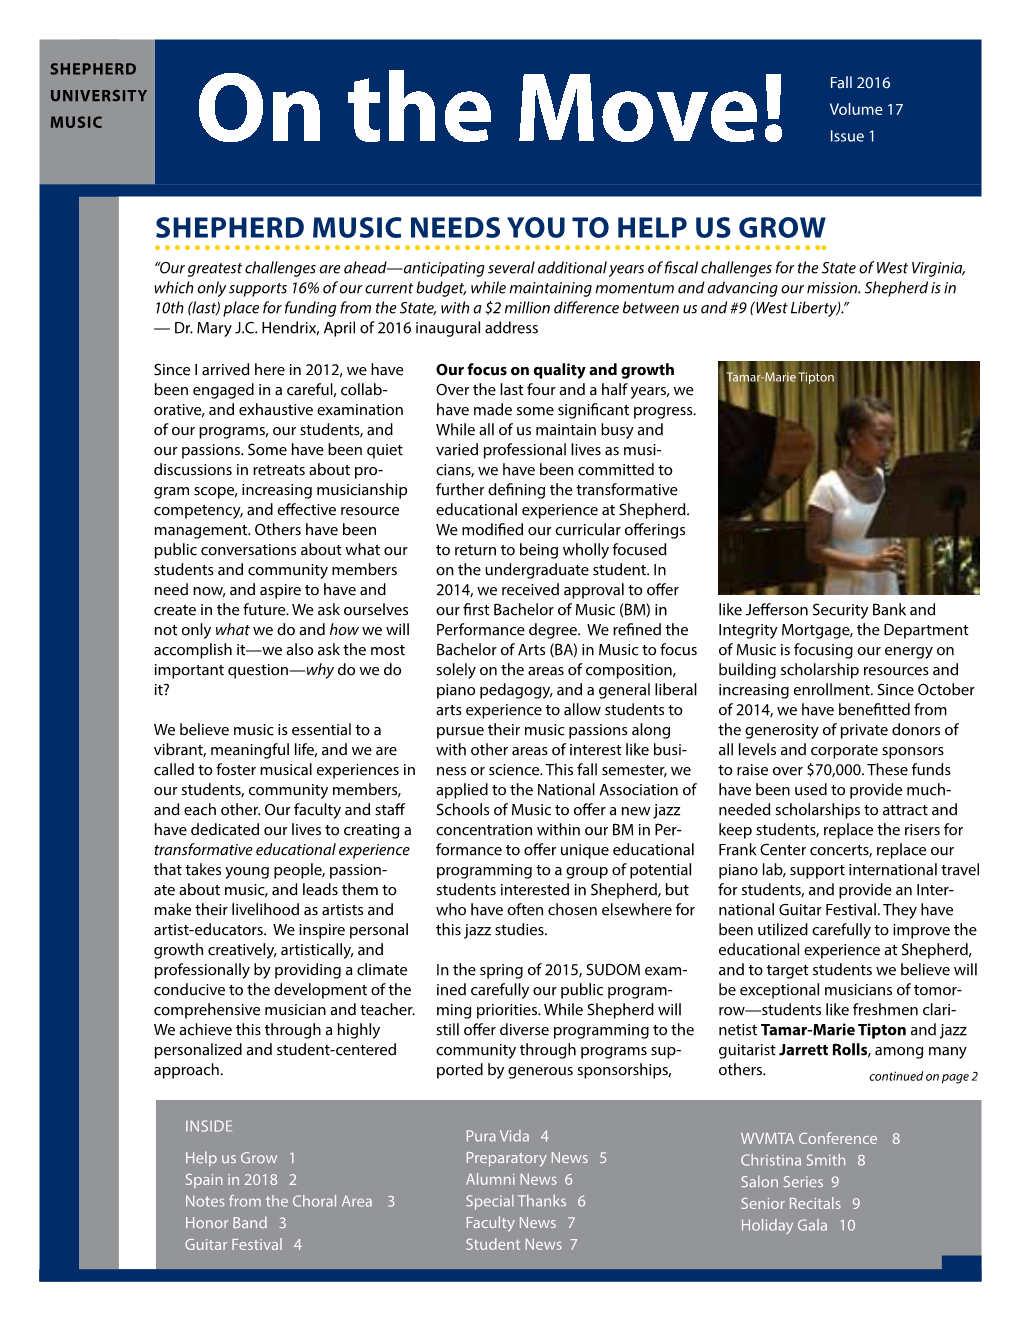 Shepherd Music Needs You to Help Us Grow